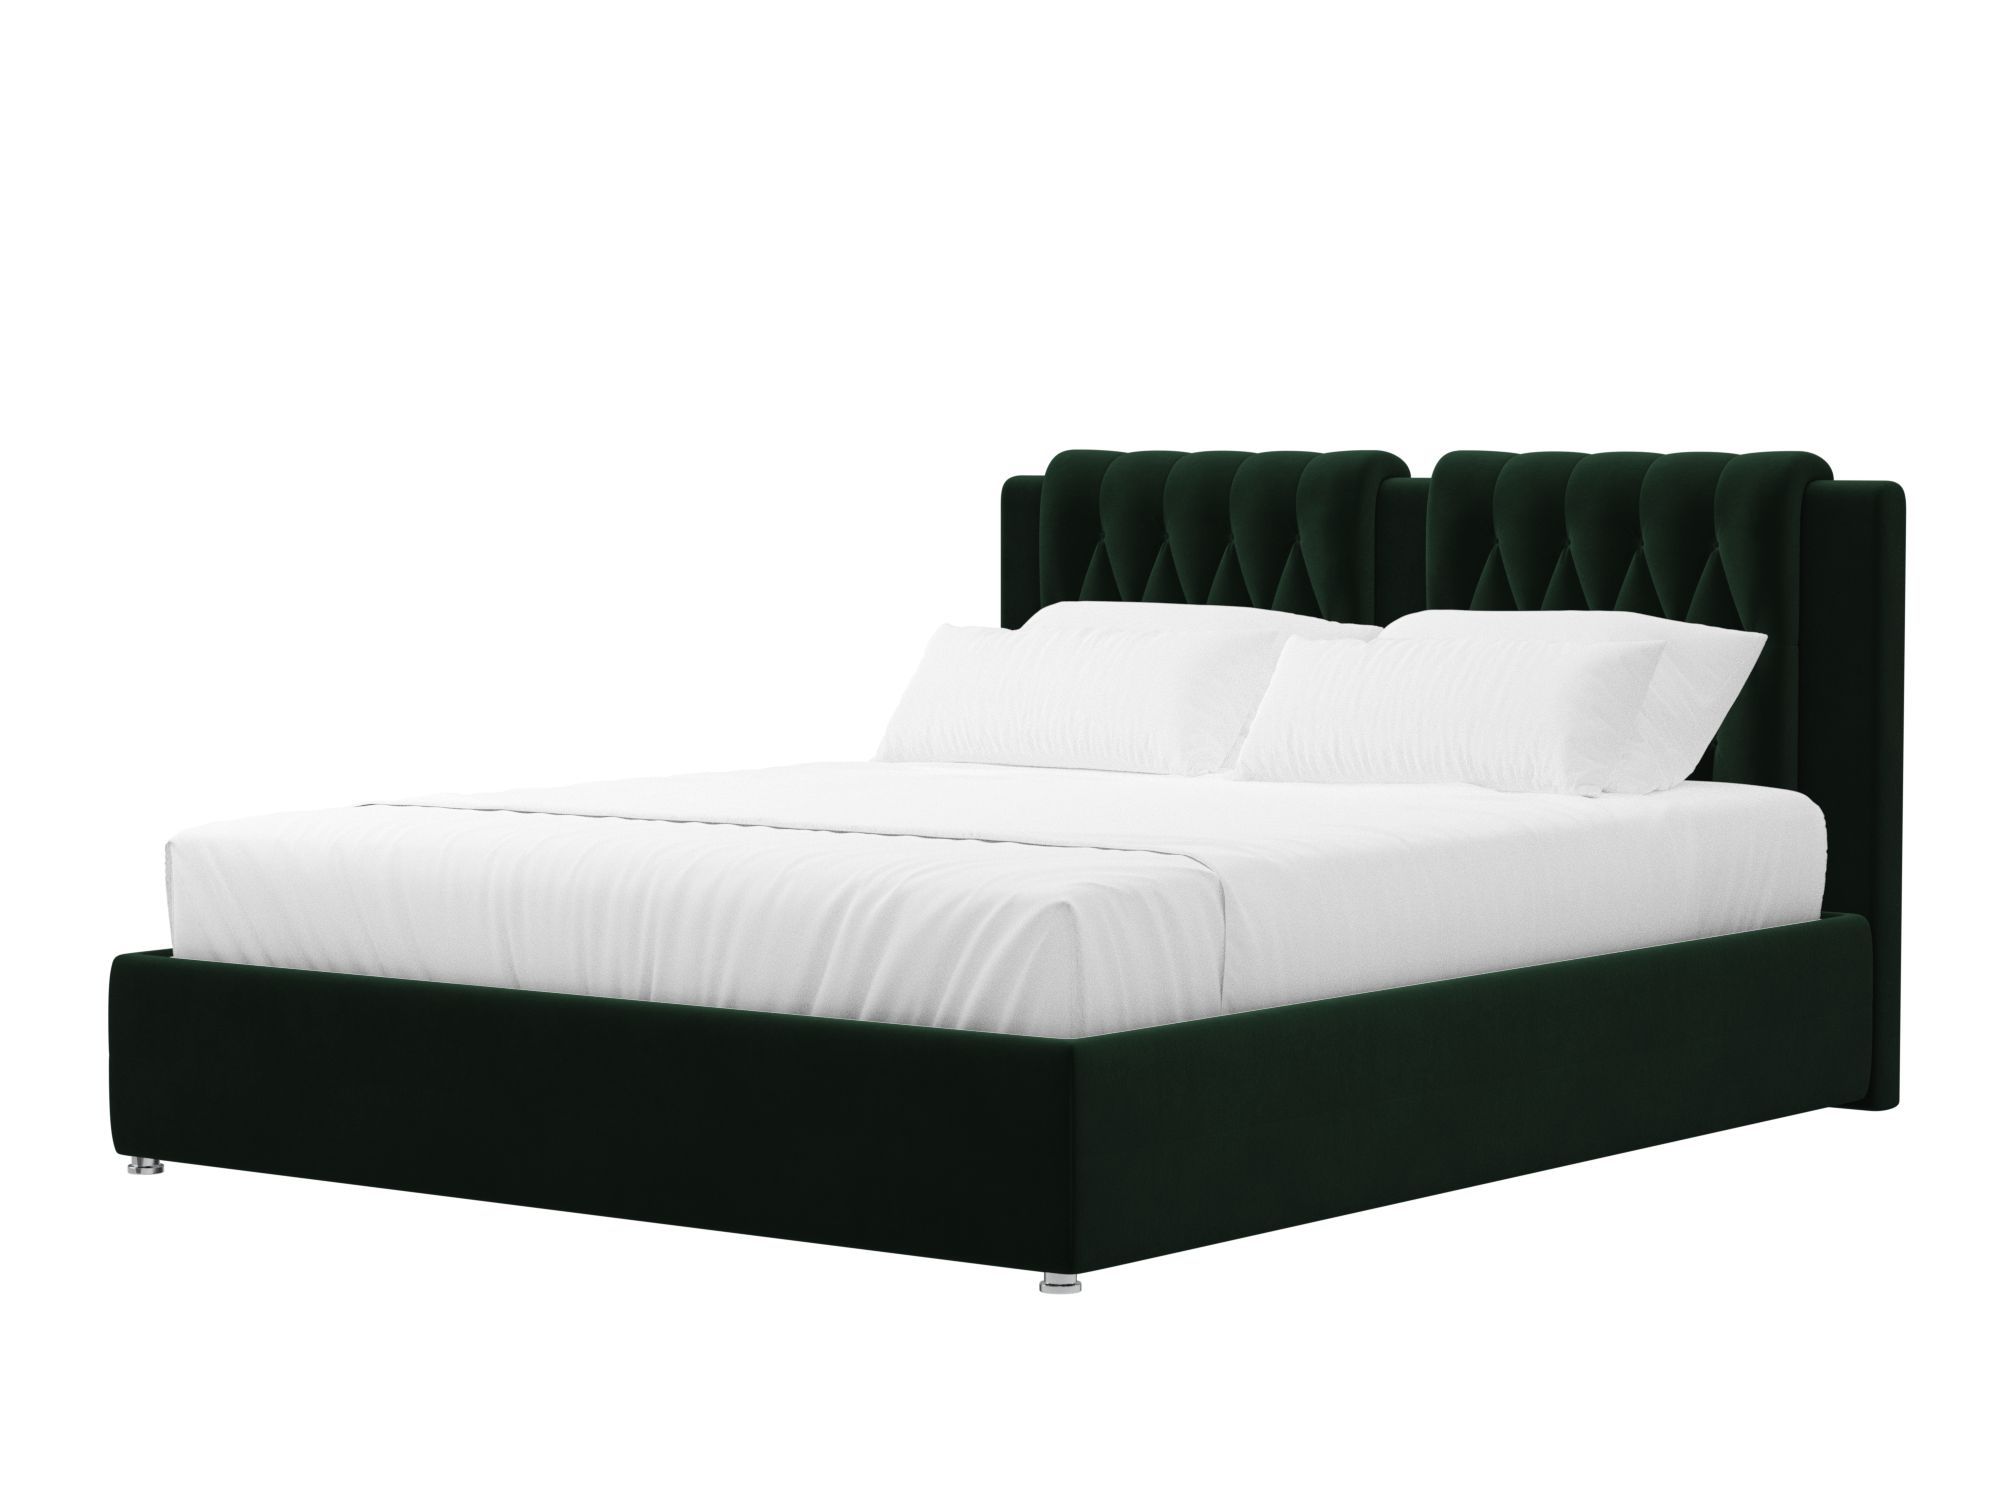 Кровать интерьерная Камилла 200 (зеленый)